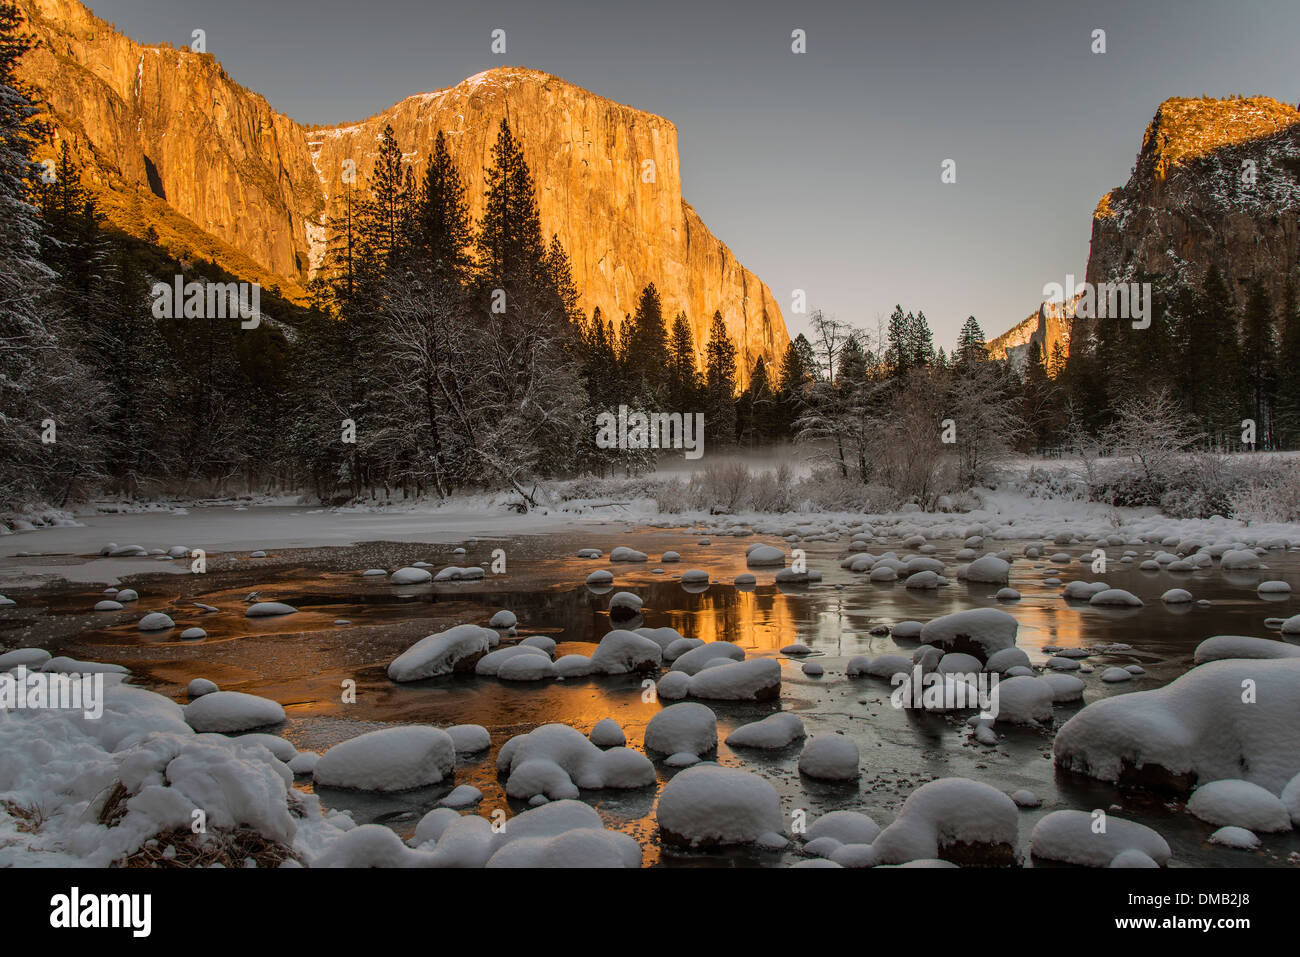 Scenic paesaggio innevato con frozen river e El Capitan montagna dietro, Yosemite National Park, California, Stati Uniti d'America Foto Stock